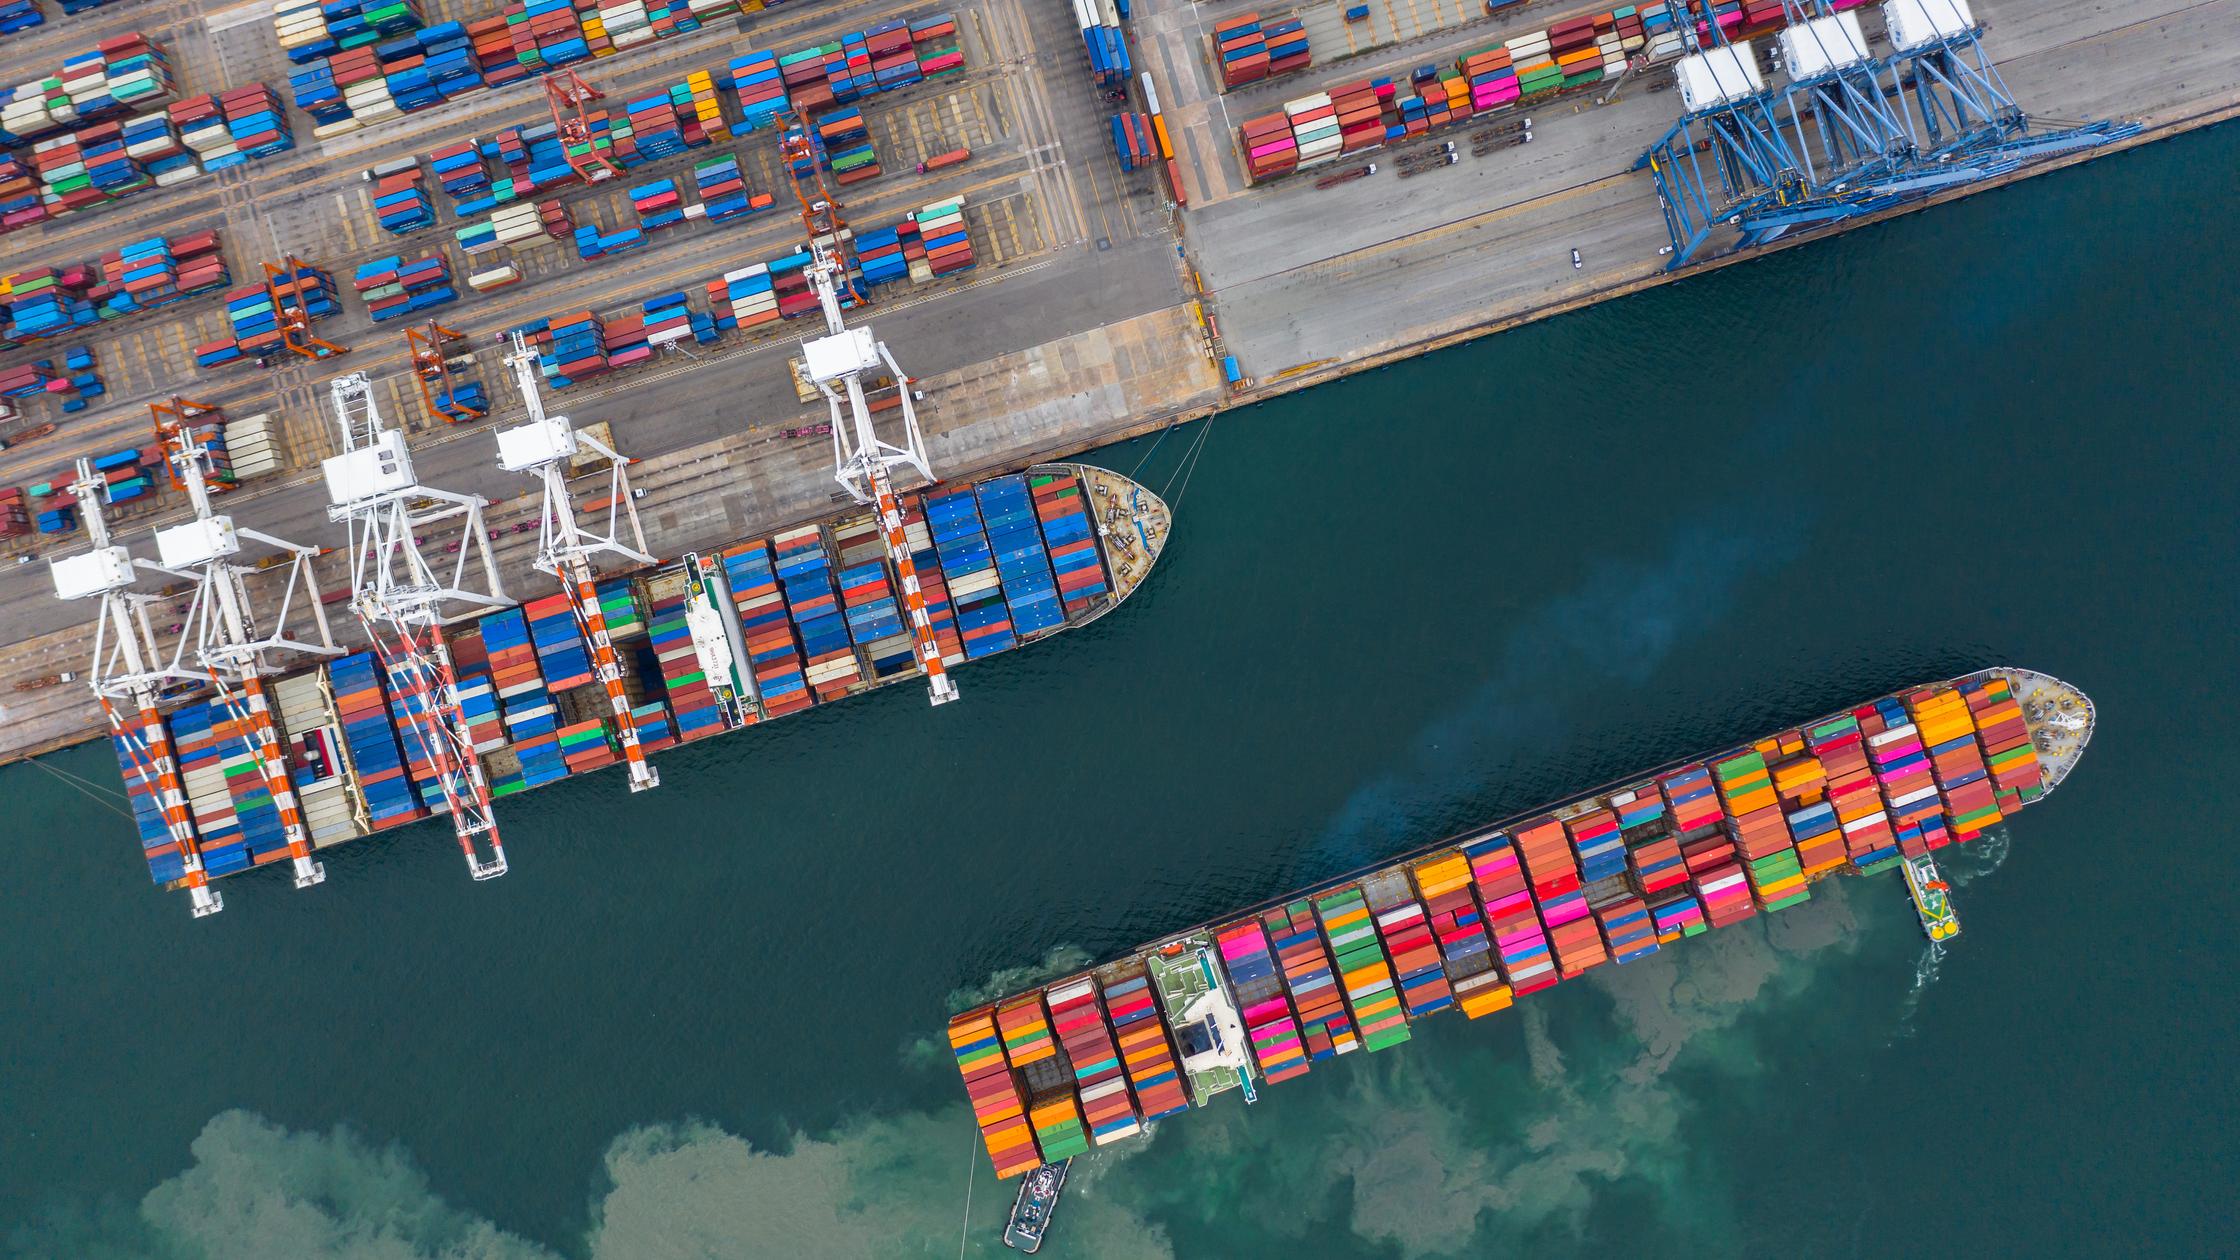 Supply chain - cargo ships